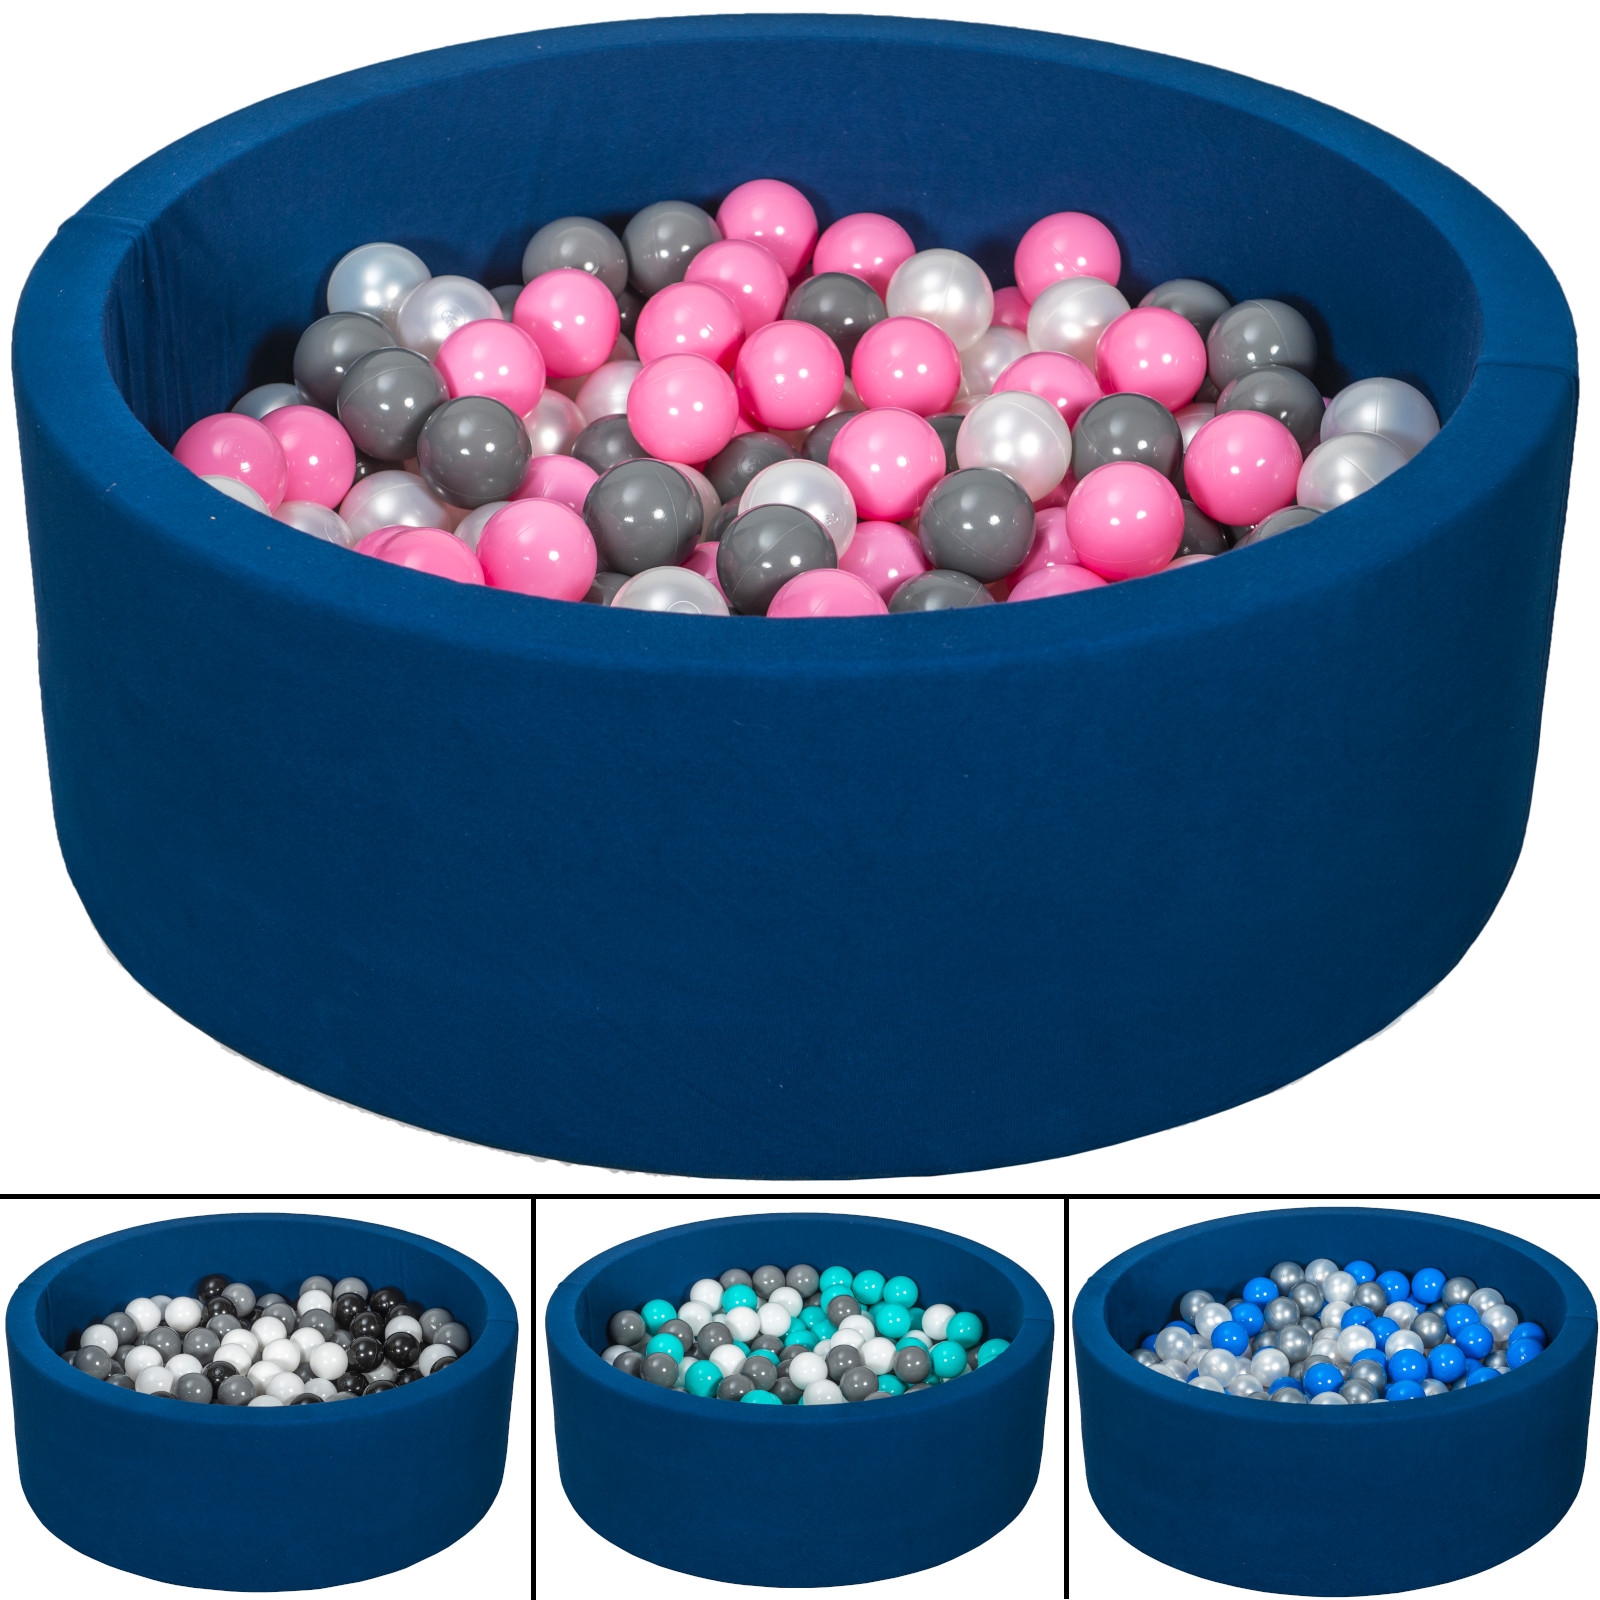 Piscina infantil de bolas para niños, 200 piezas, color azul marino